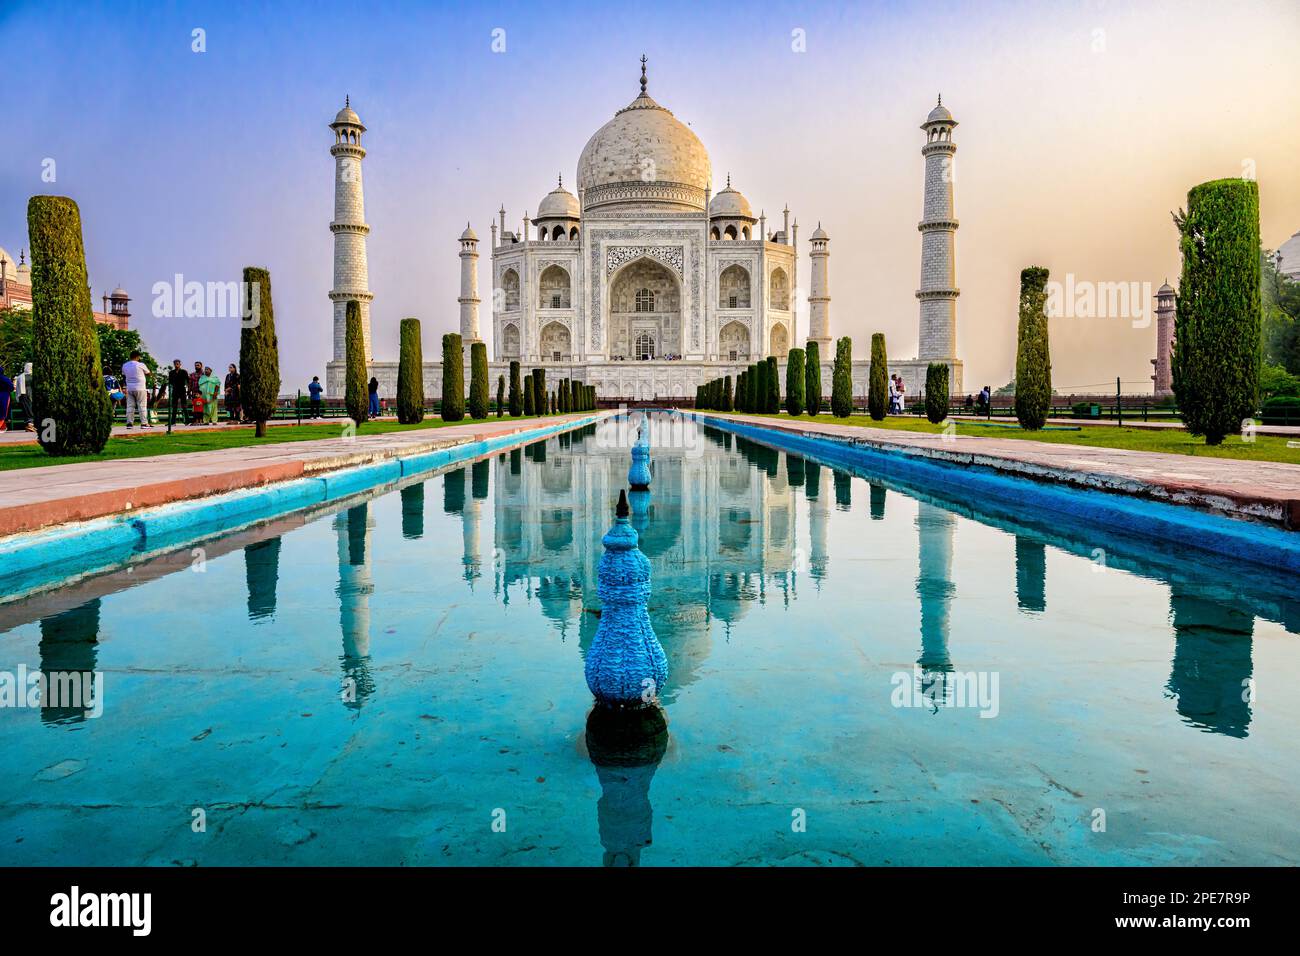 La résection symétrique du Taj Mahal dans la piscine réfléchissante située dans les jardins parfaitement ordonnés, qui sont typiques de l'art de Mughal Banque D'Images